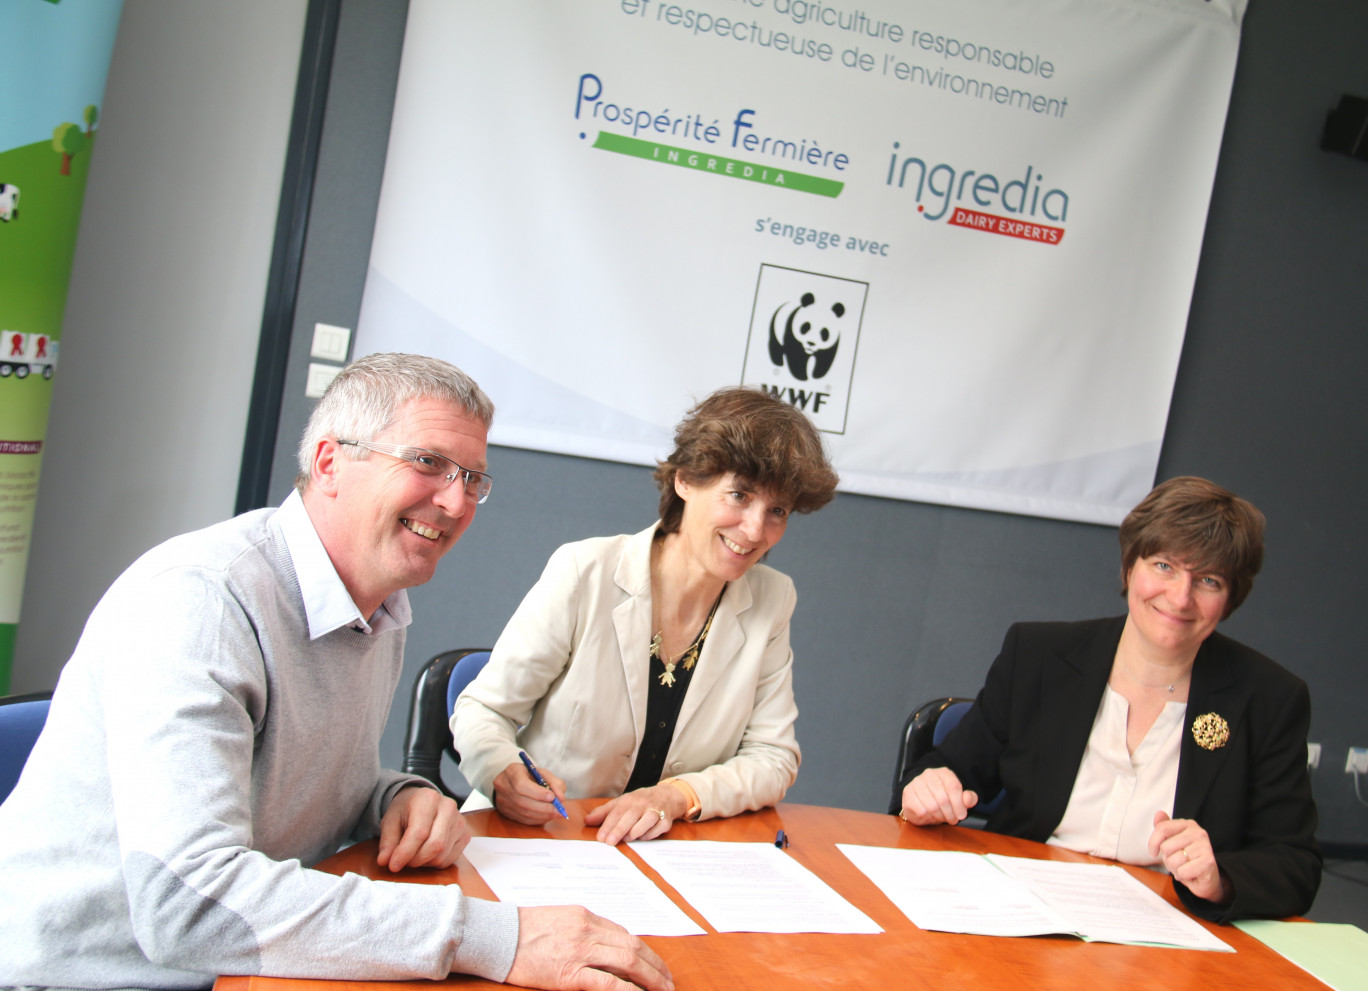 Lors de la signature en mars du partenariat  WWWF-Prospérité Fermière (de gauche à droite) : Gilles Desgrousilliers, président de Prospérité Fermière et d’Ingredia, Marie-Christine Korniloff,  directrice déléguée au monde économique WWF France, et Sandrine Delory, directrice générale de Prospérité Fermière Ingredia.